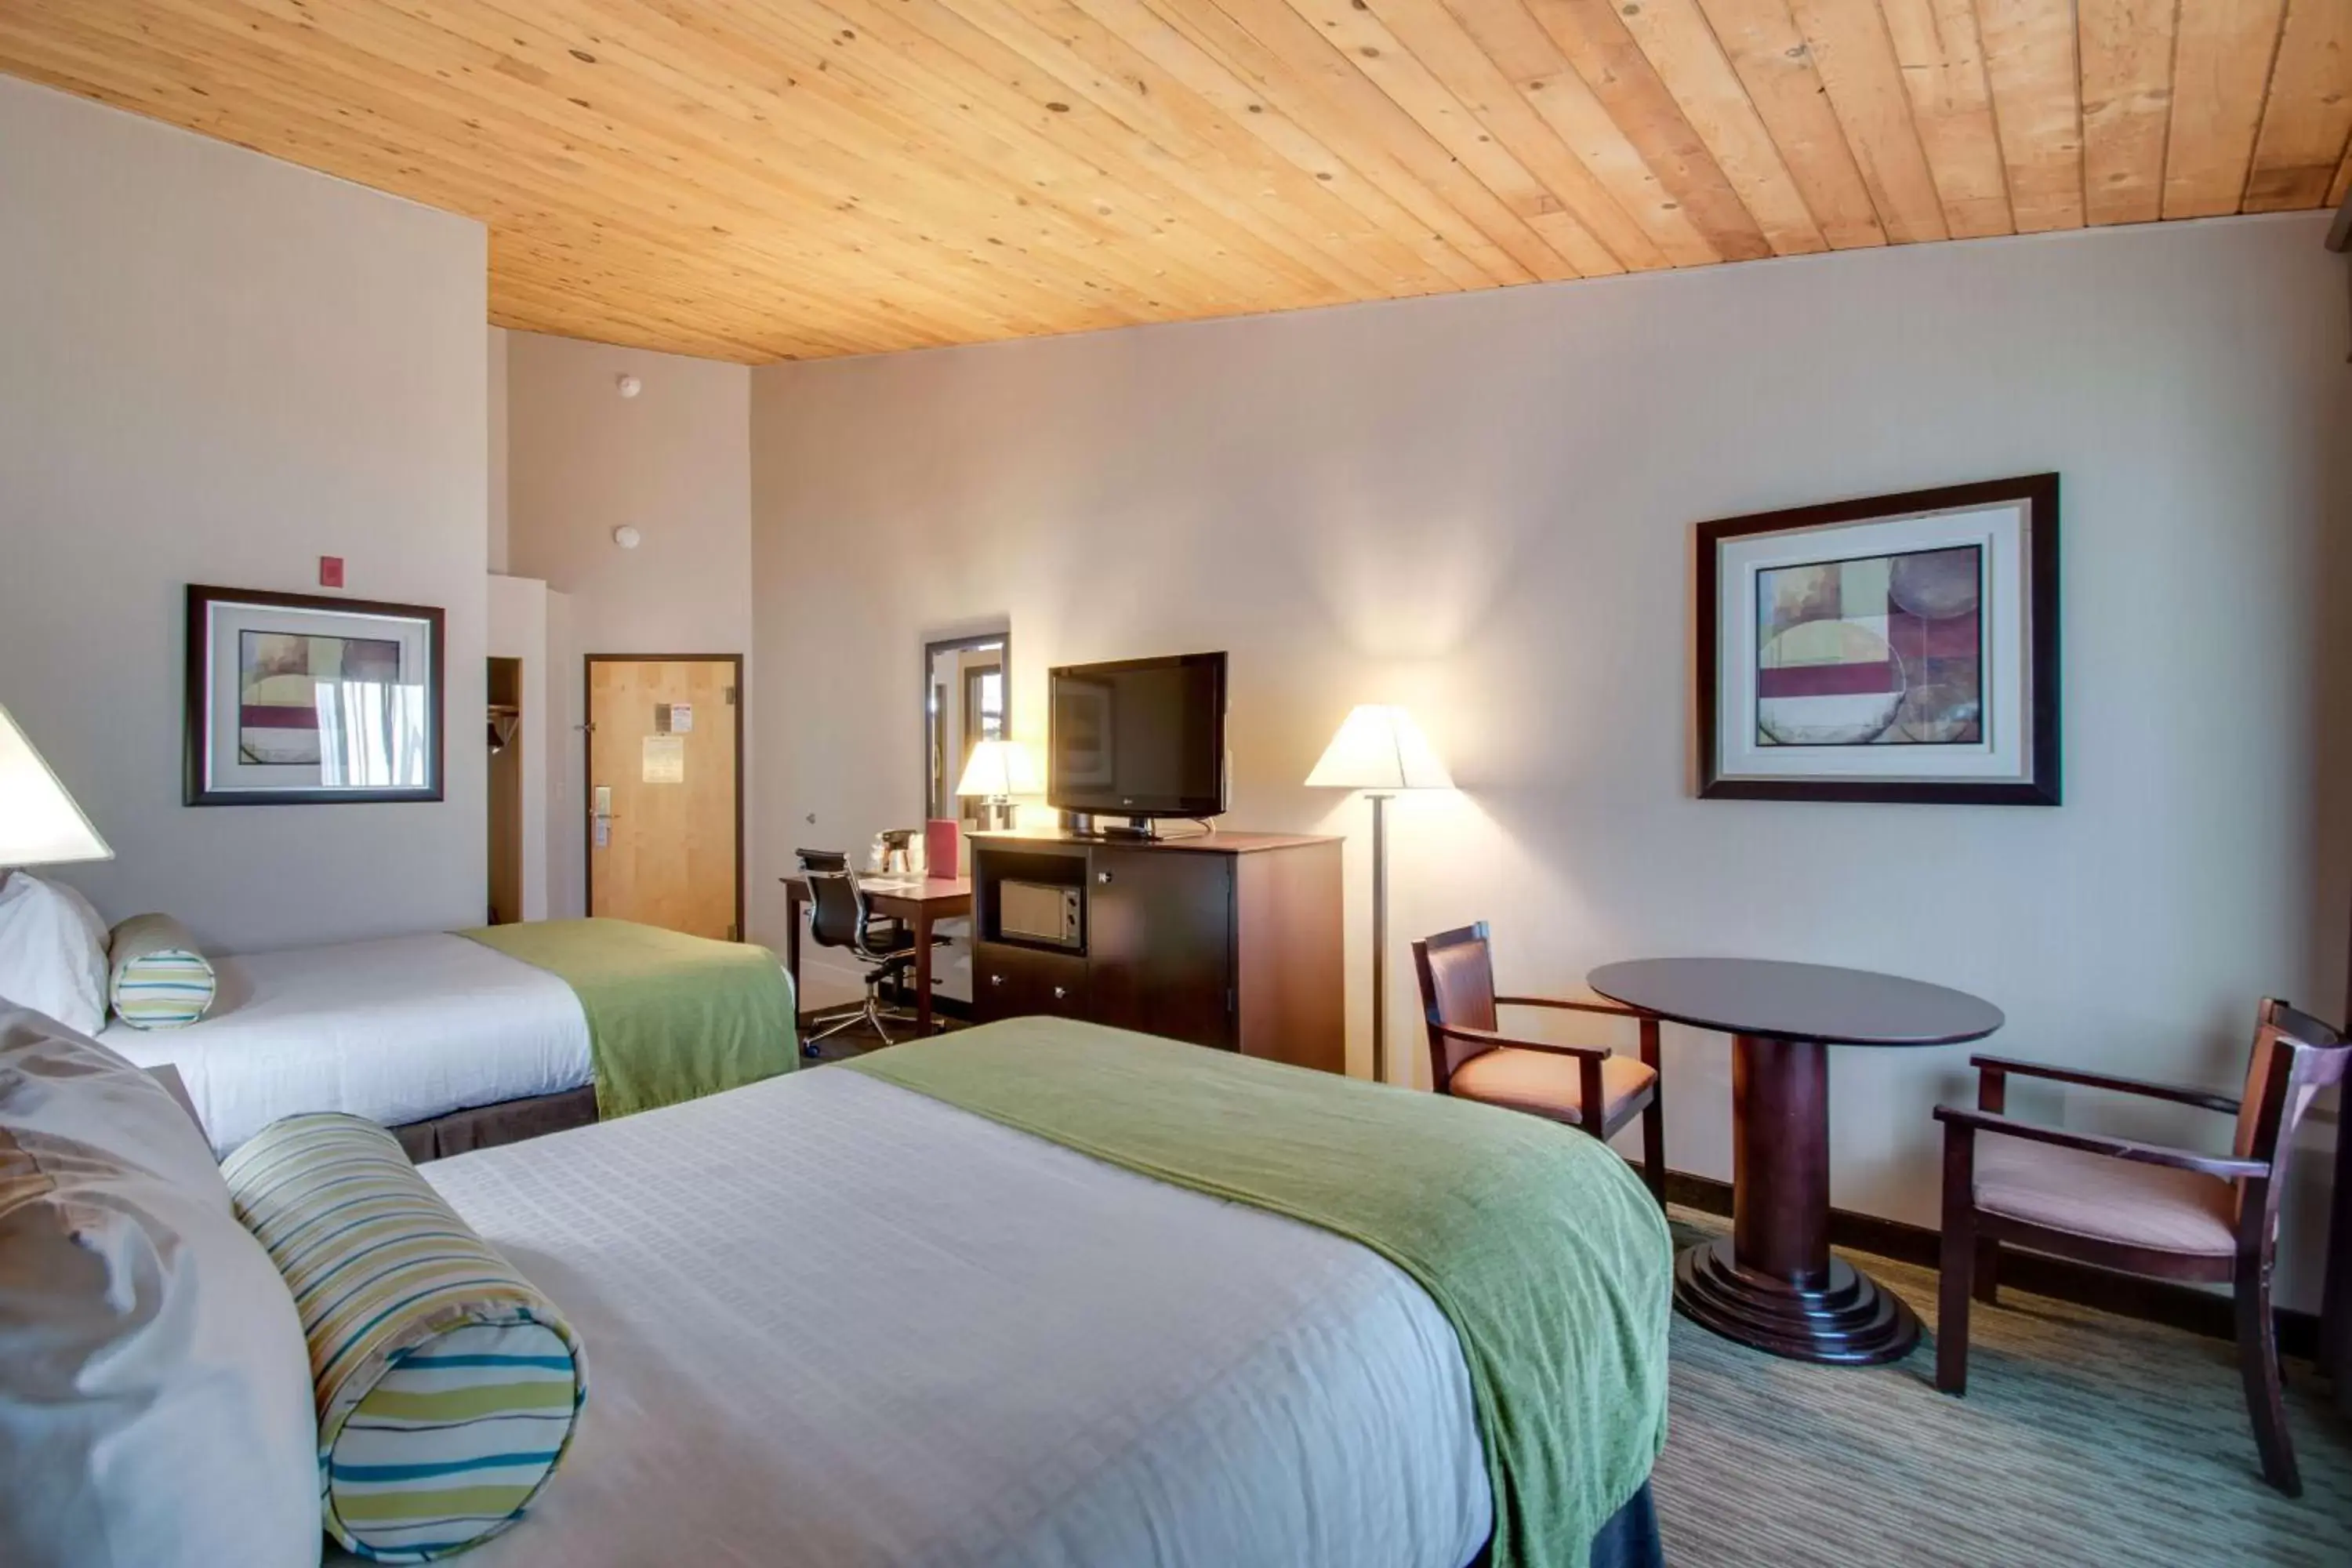 Bedroom, Bed in Best Western Plus, The Inn at Hampton